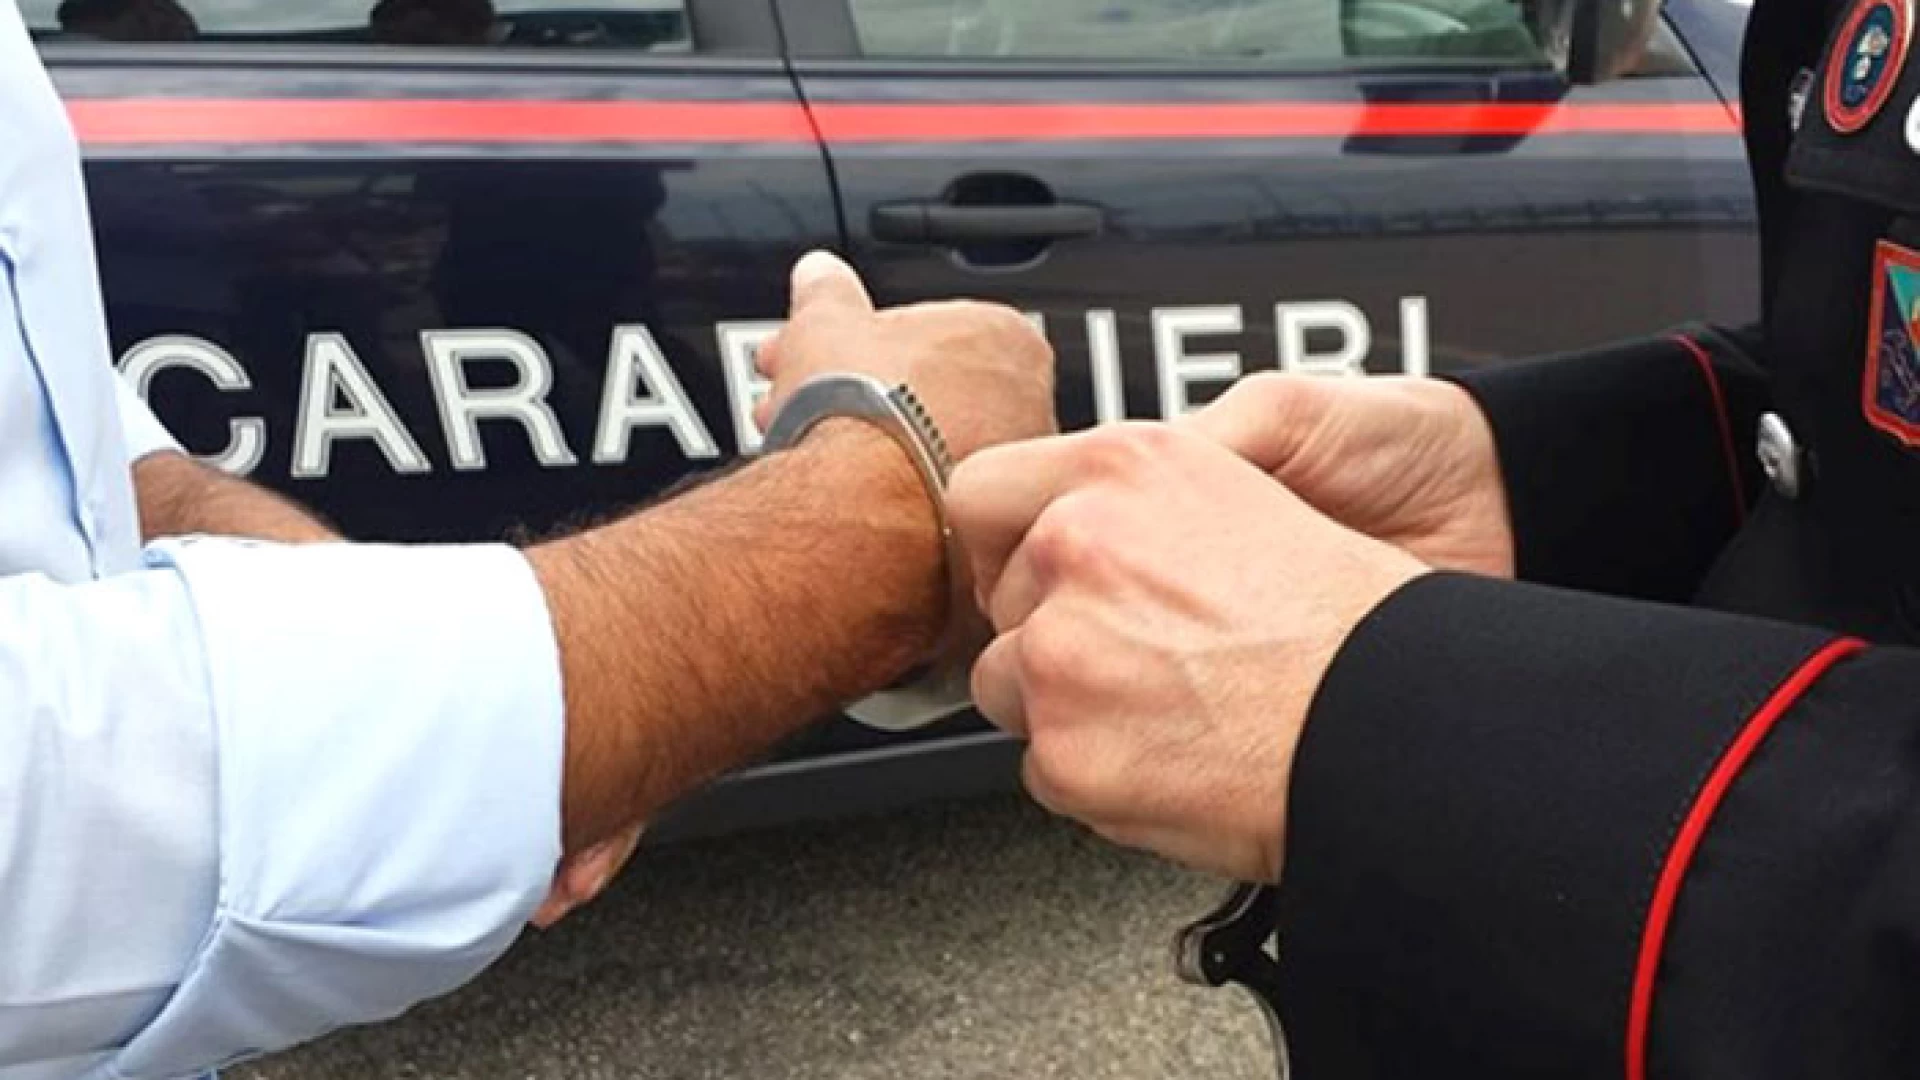 Venafro: Furti, armi e droga, una persona arrestata e quattro denunciate dai Carabinieri. Arrestato un 21enne di Minturno per furto ad un imprenditore isernino.